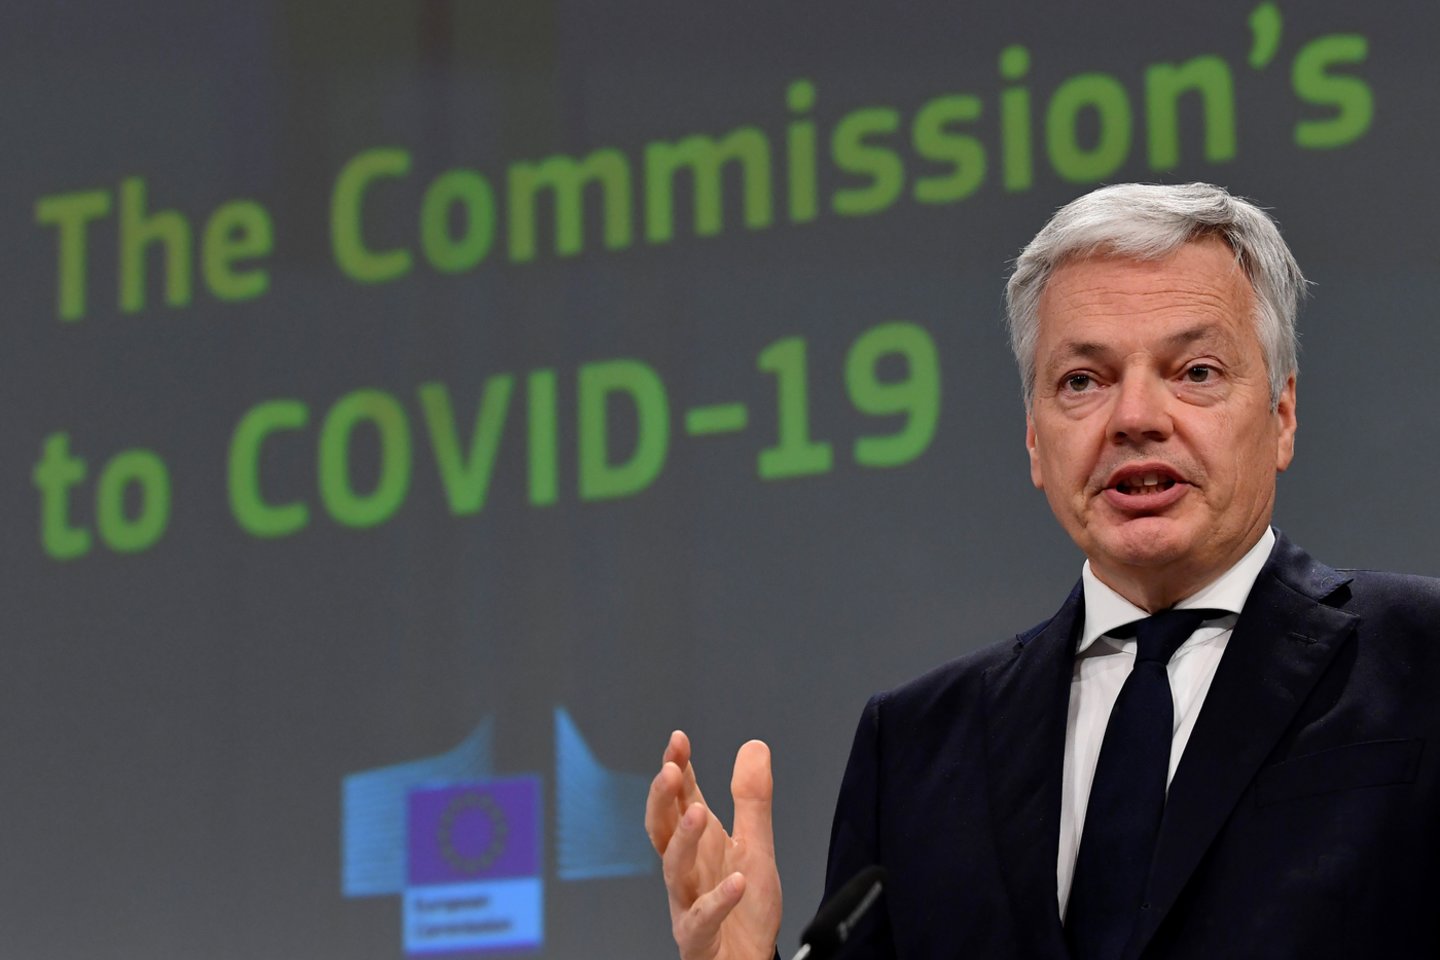  Teisingumo eurokomisaras D.Reyndersas sako, kad Europos Sąjunga gins Sausio 13-osios bylą nagrinėjusius Lietuvos teisėjus nuo Rusijos persekiojimo. <br> AP/Scanpix nuotr.